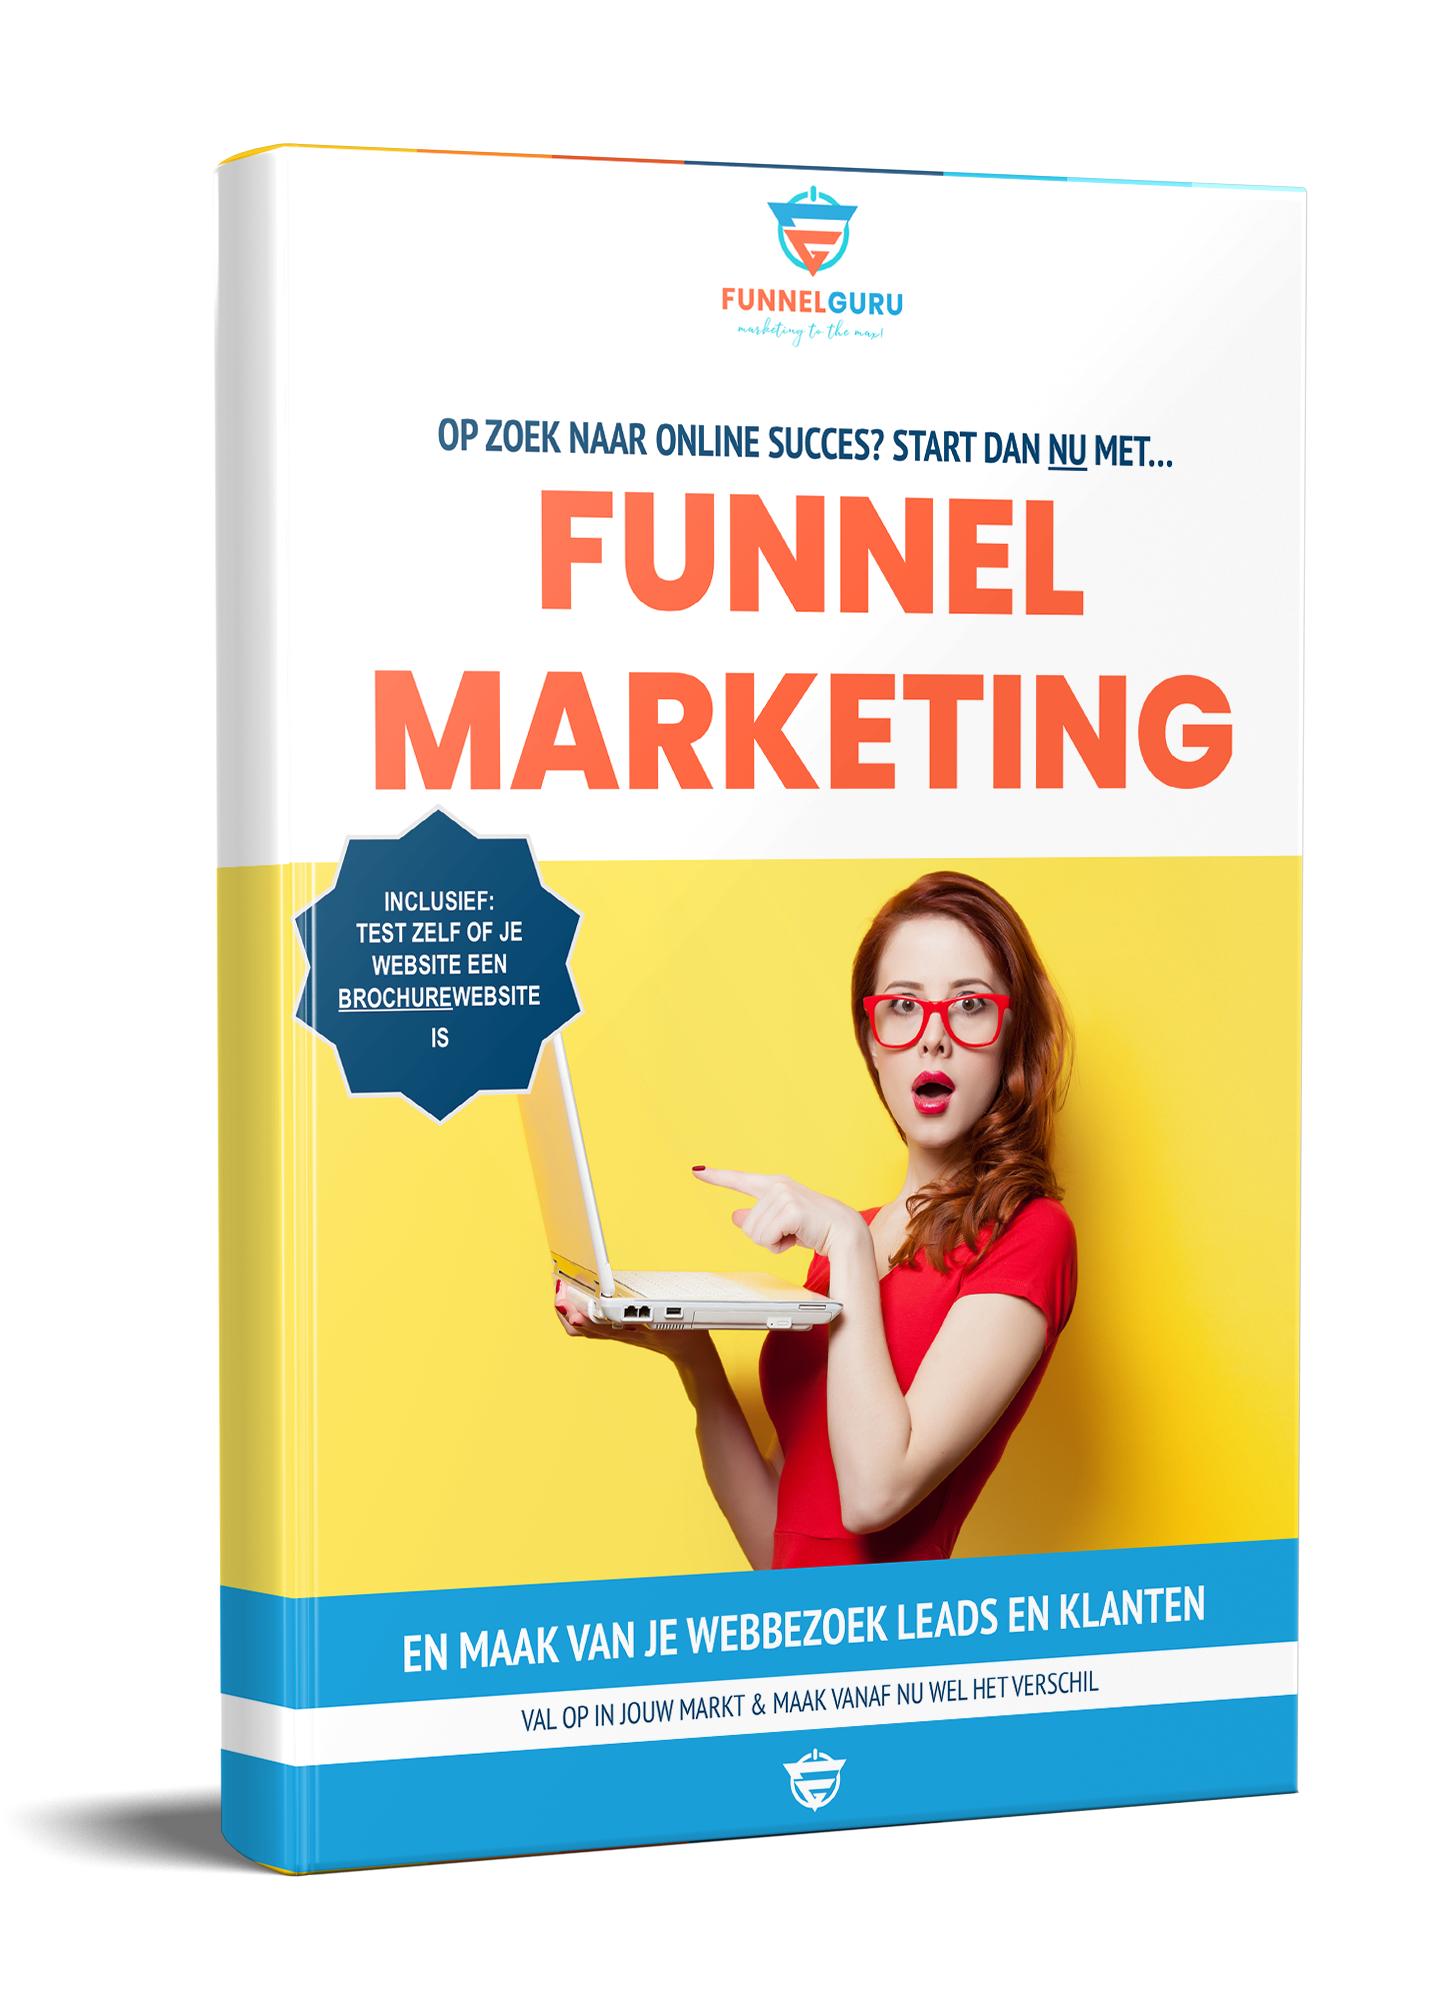 Op zoek naar online succes start dan nu met funnel marketing